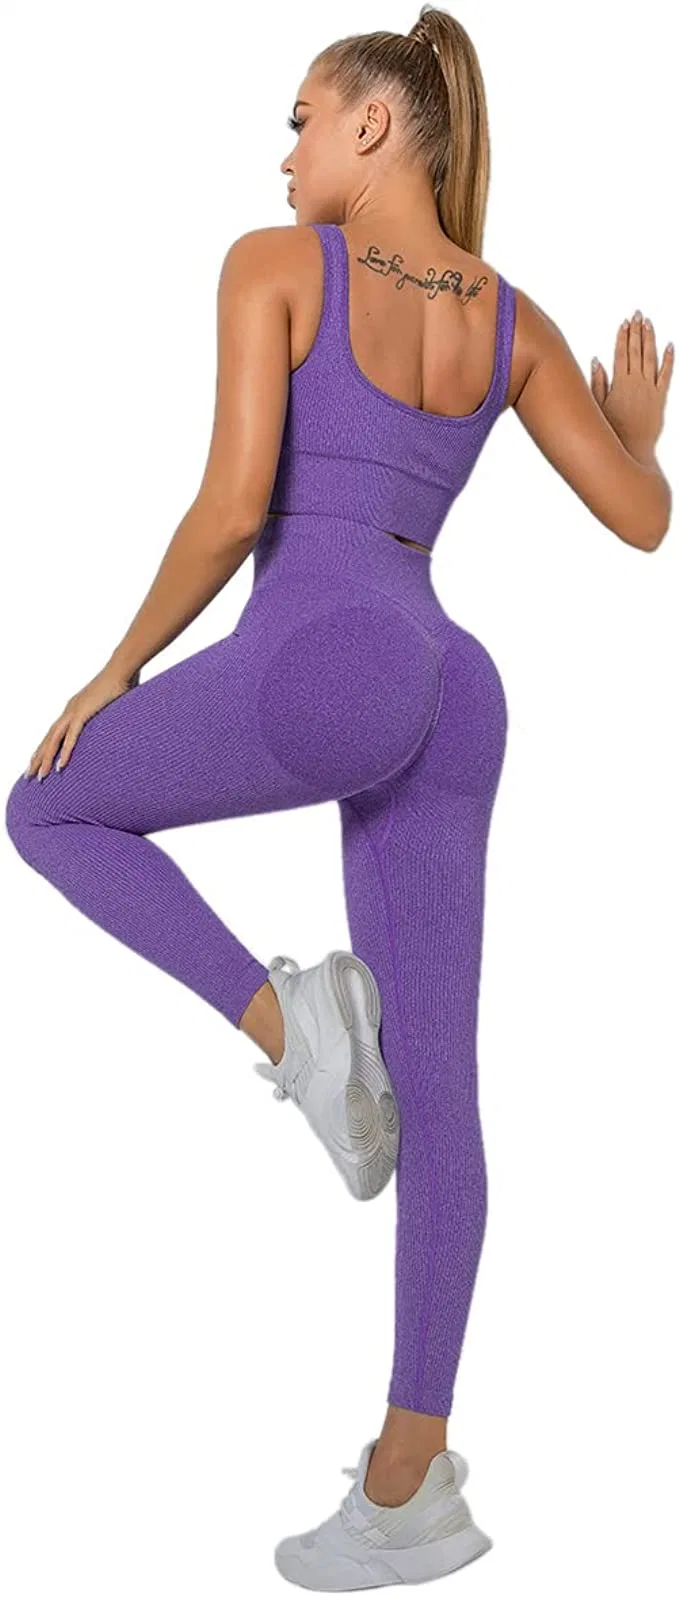 Gimnasio yoga desgaste de ropa deportiva ropa para mujer